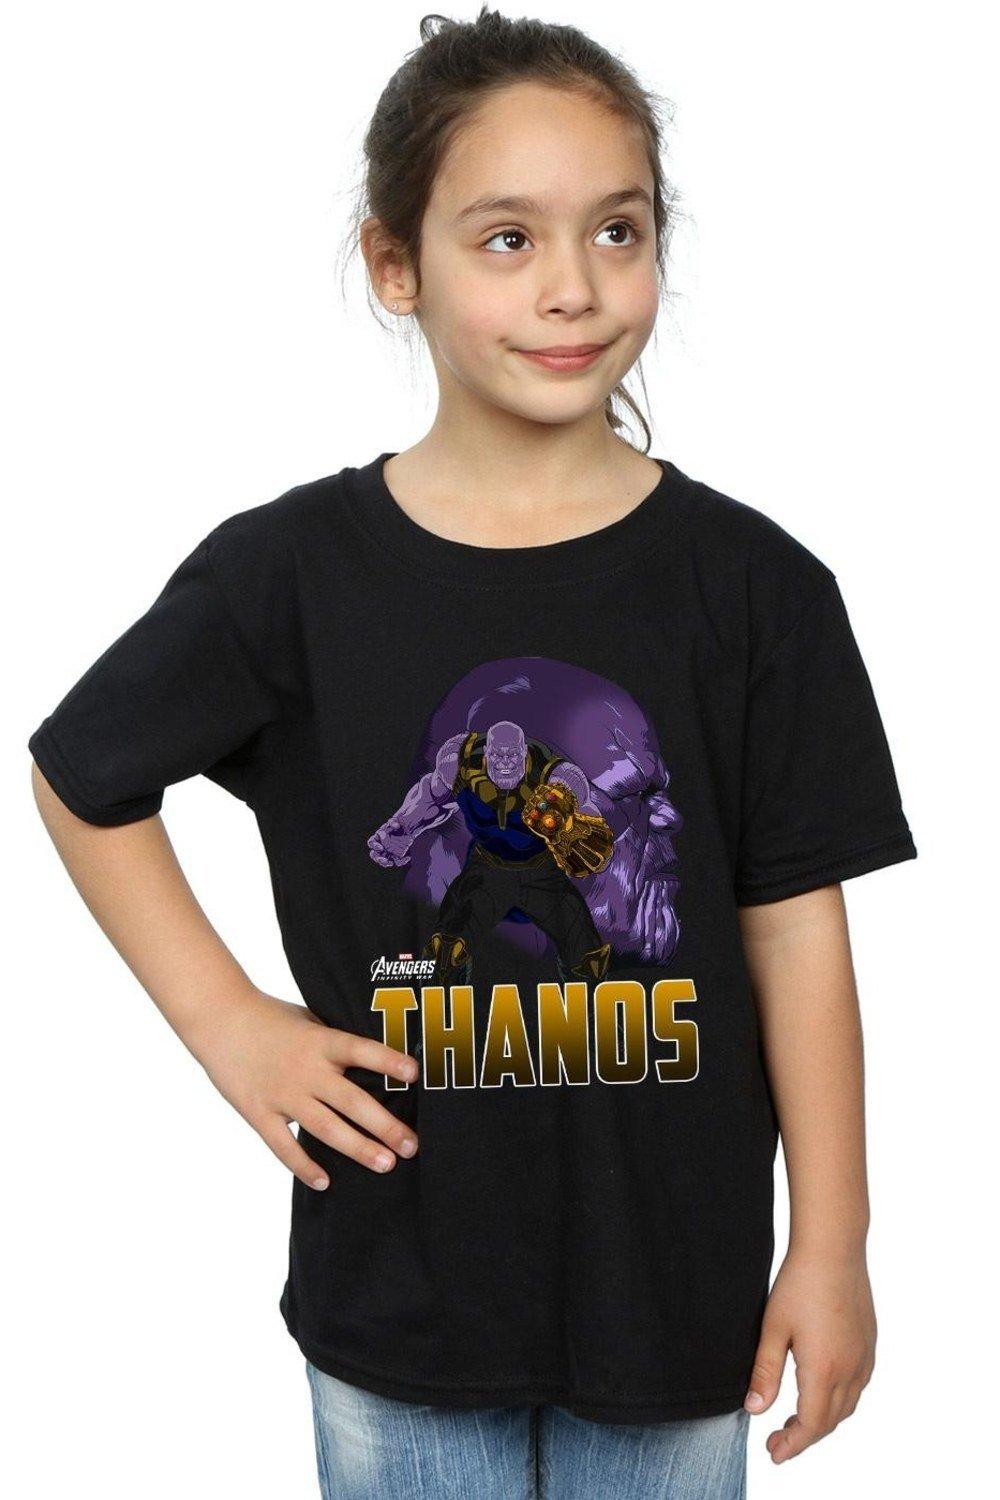 Avengers Infinity War Thanos Character Cotton T-Shirt